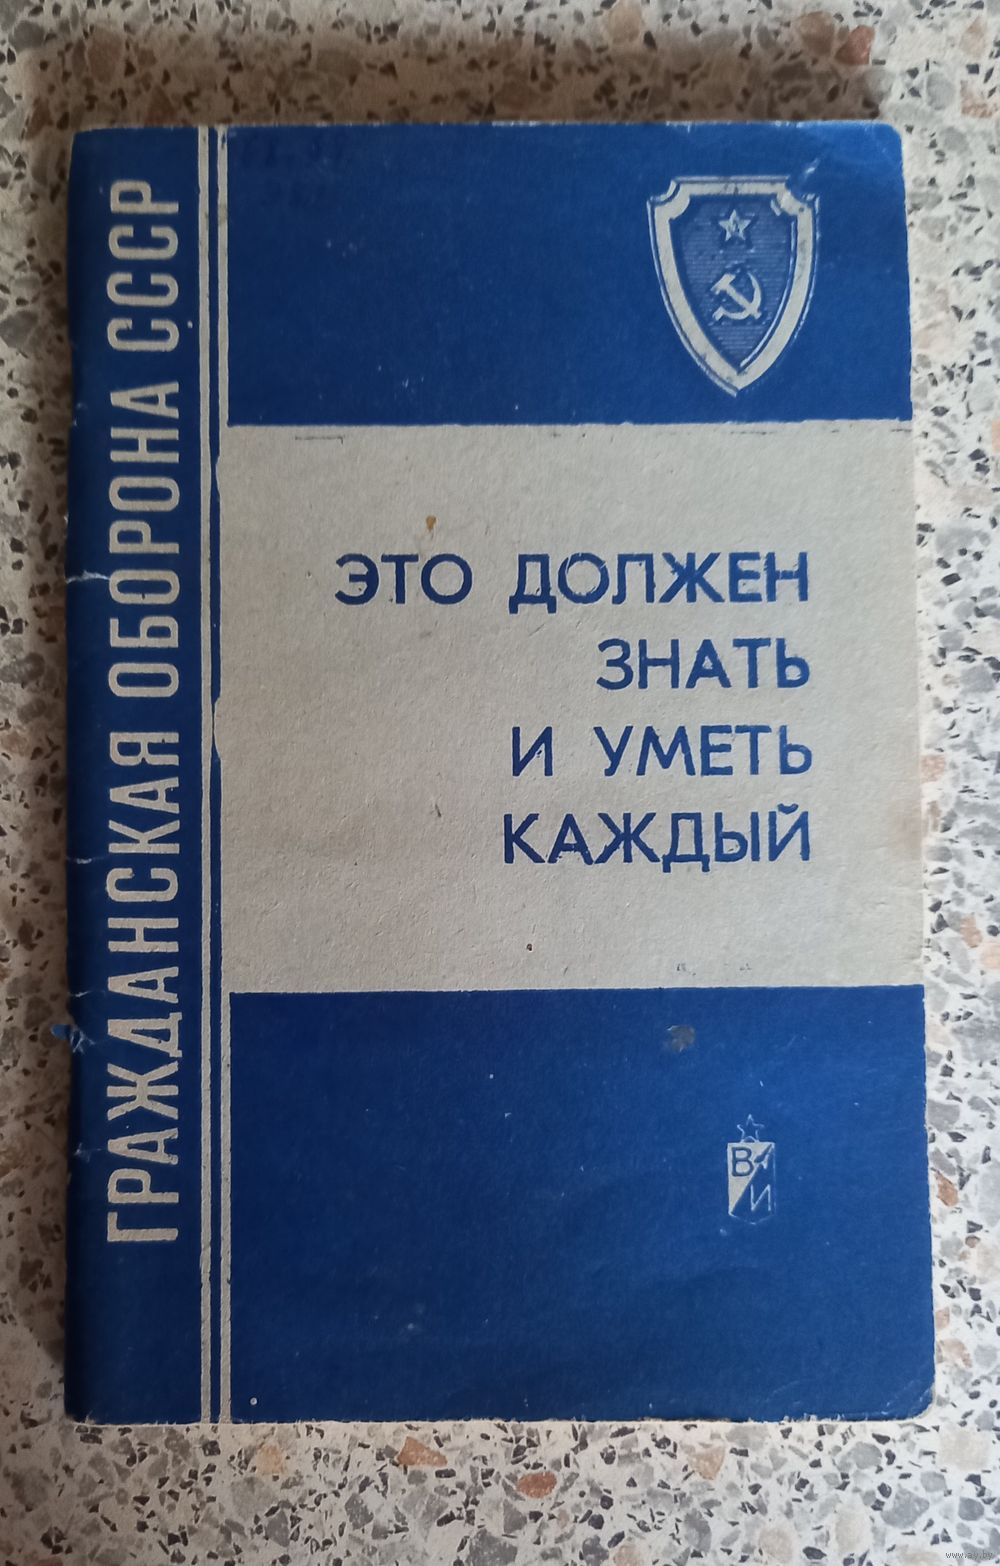 Фото: Учебник и памятка Гражданская оборона СССР